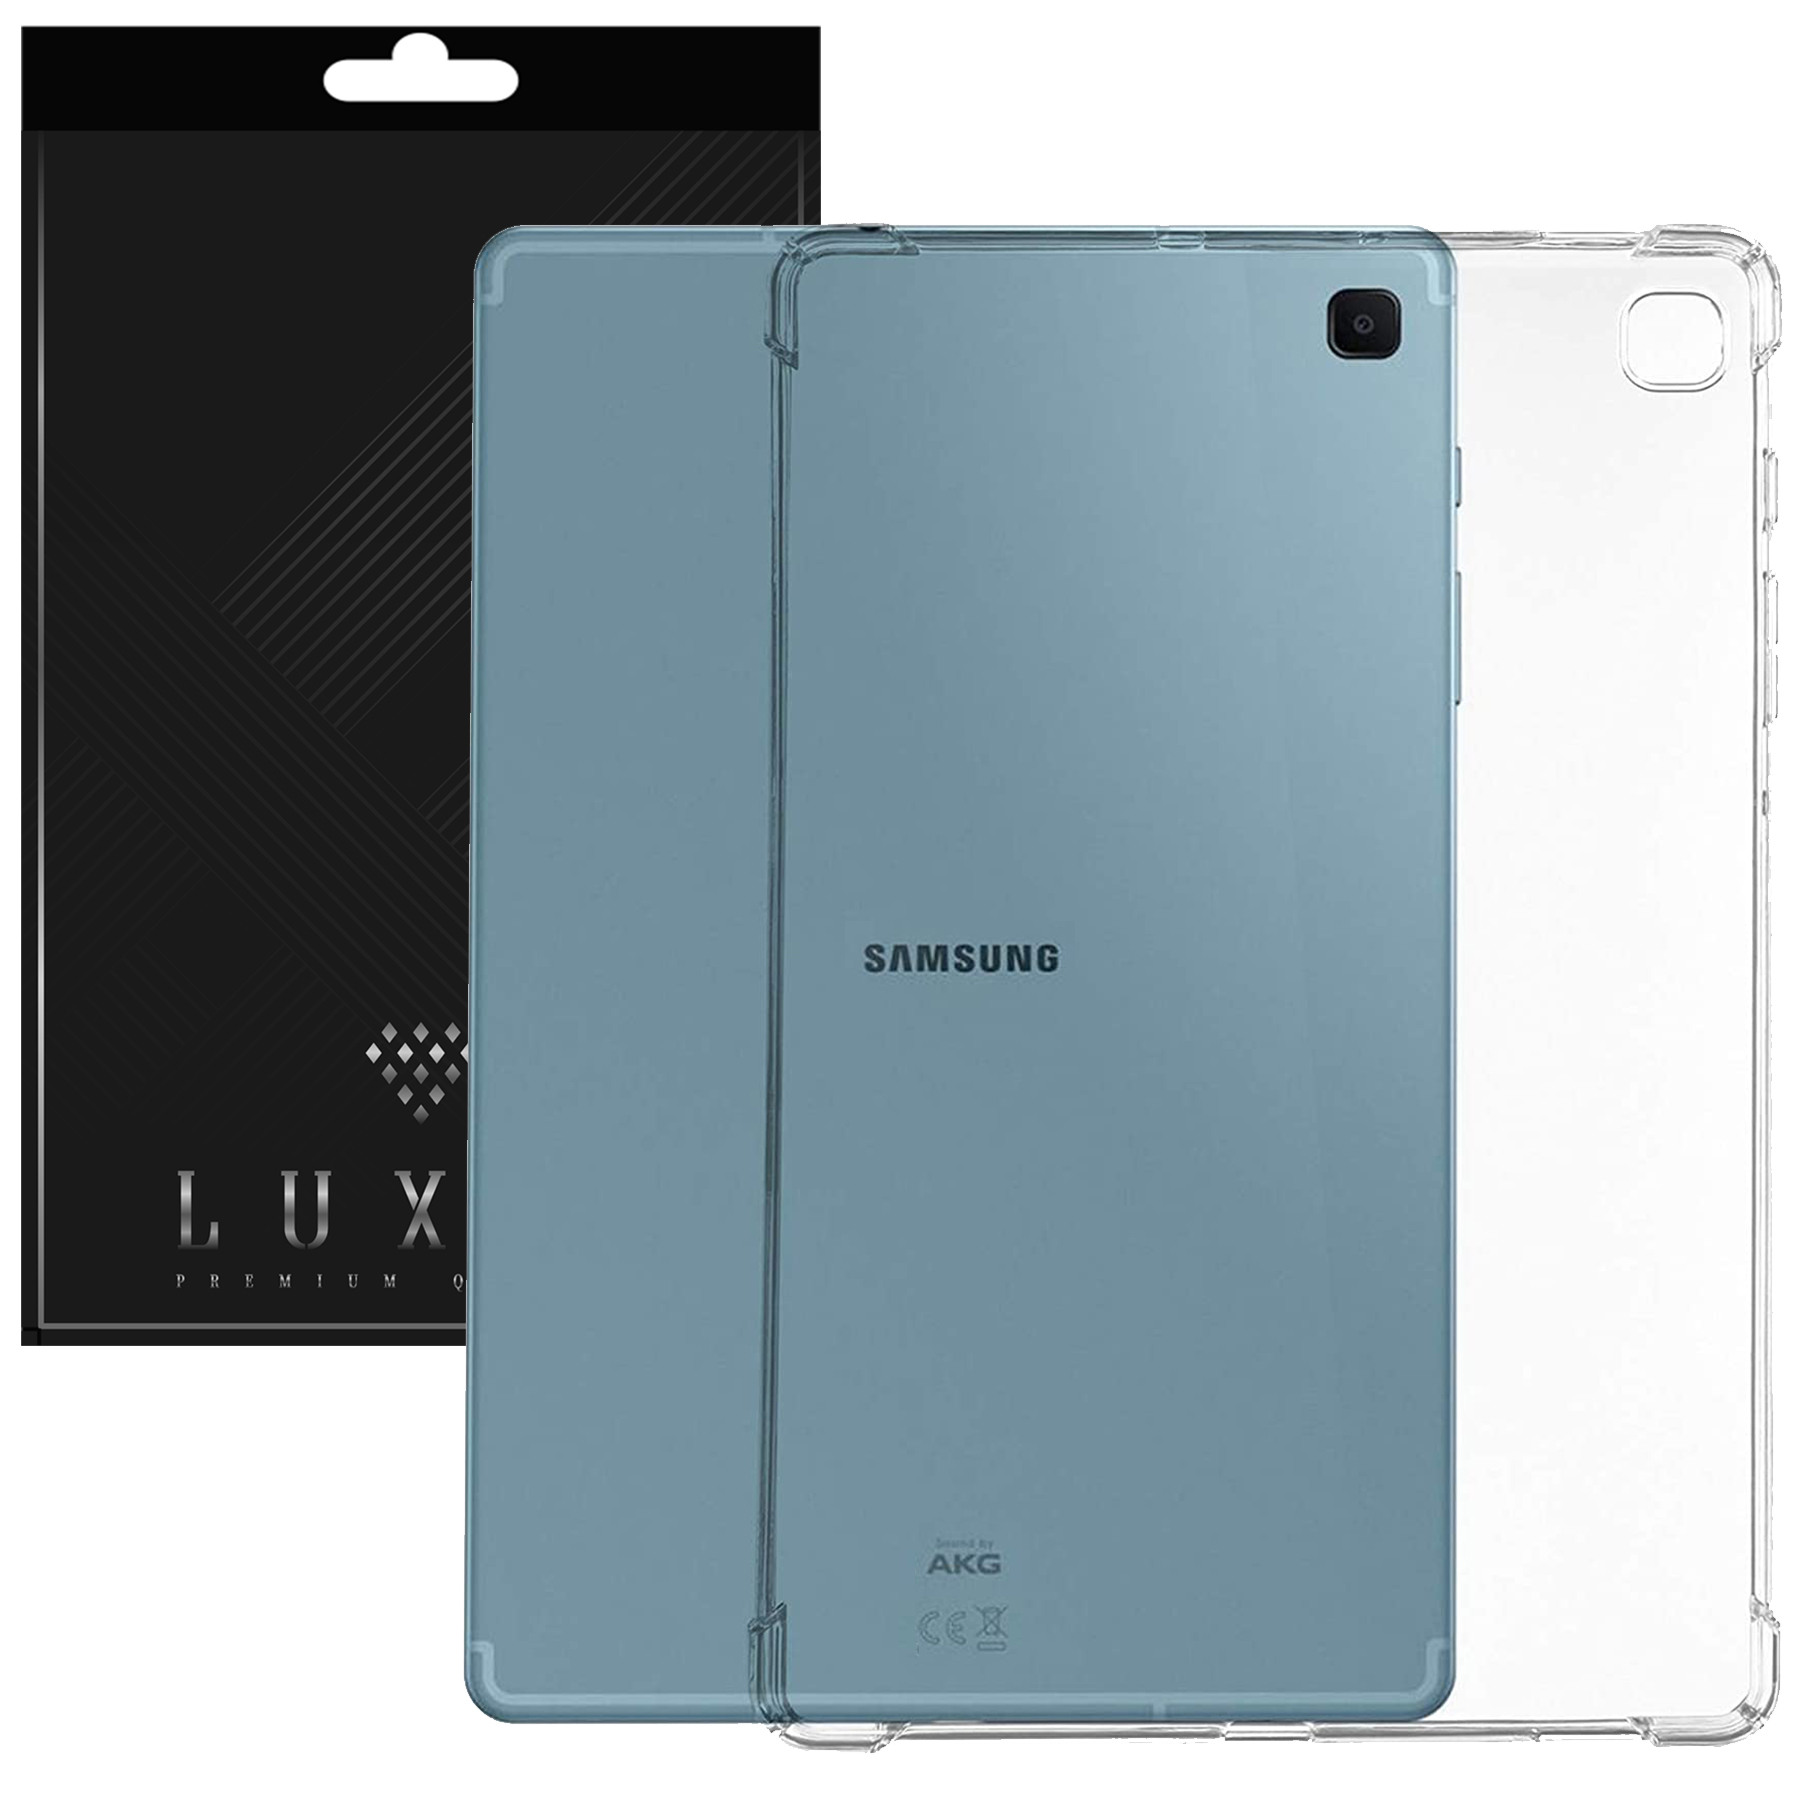 کاور لوکسار مدل Unicom مناسب برای تبلت سامسونگ Galaxy Tab S6 Lite / P615 / P610